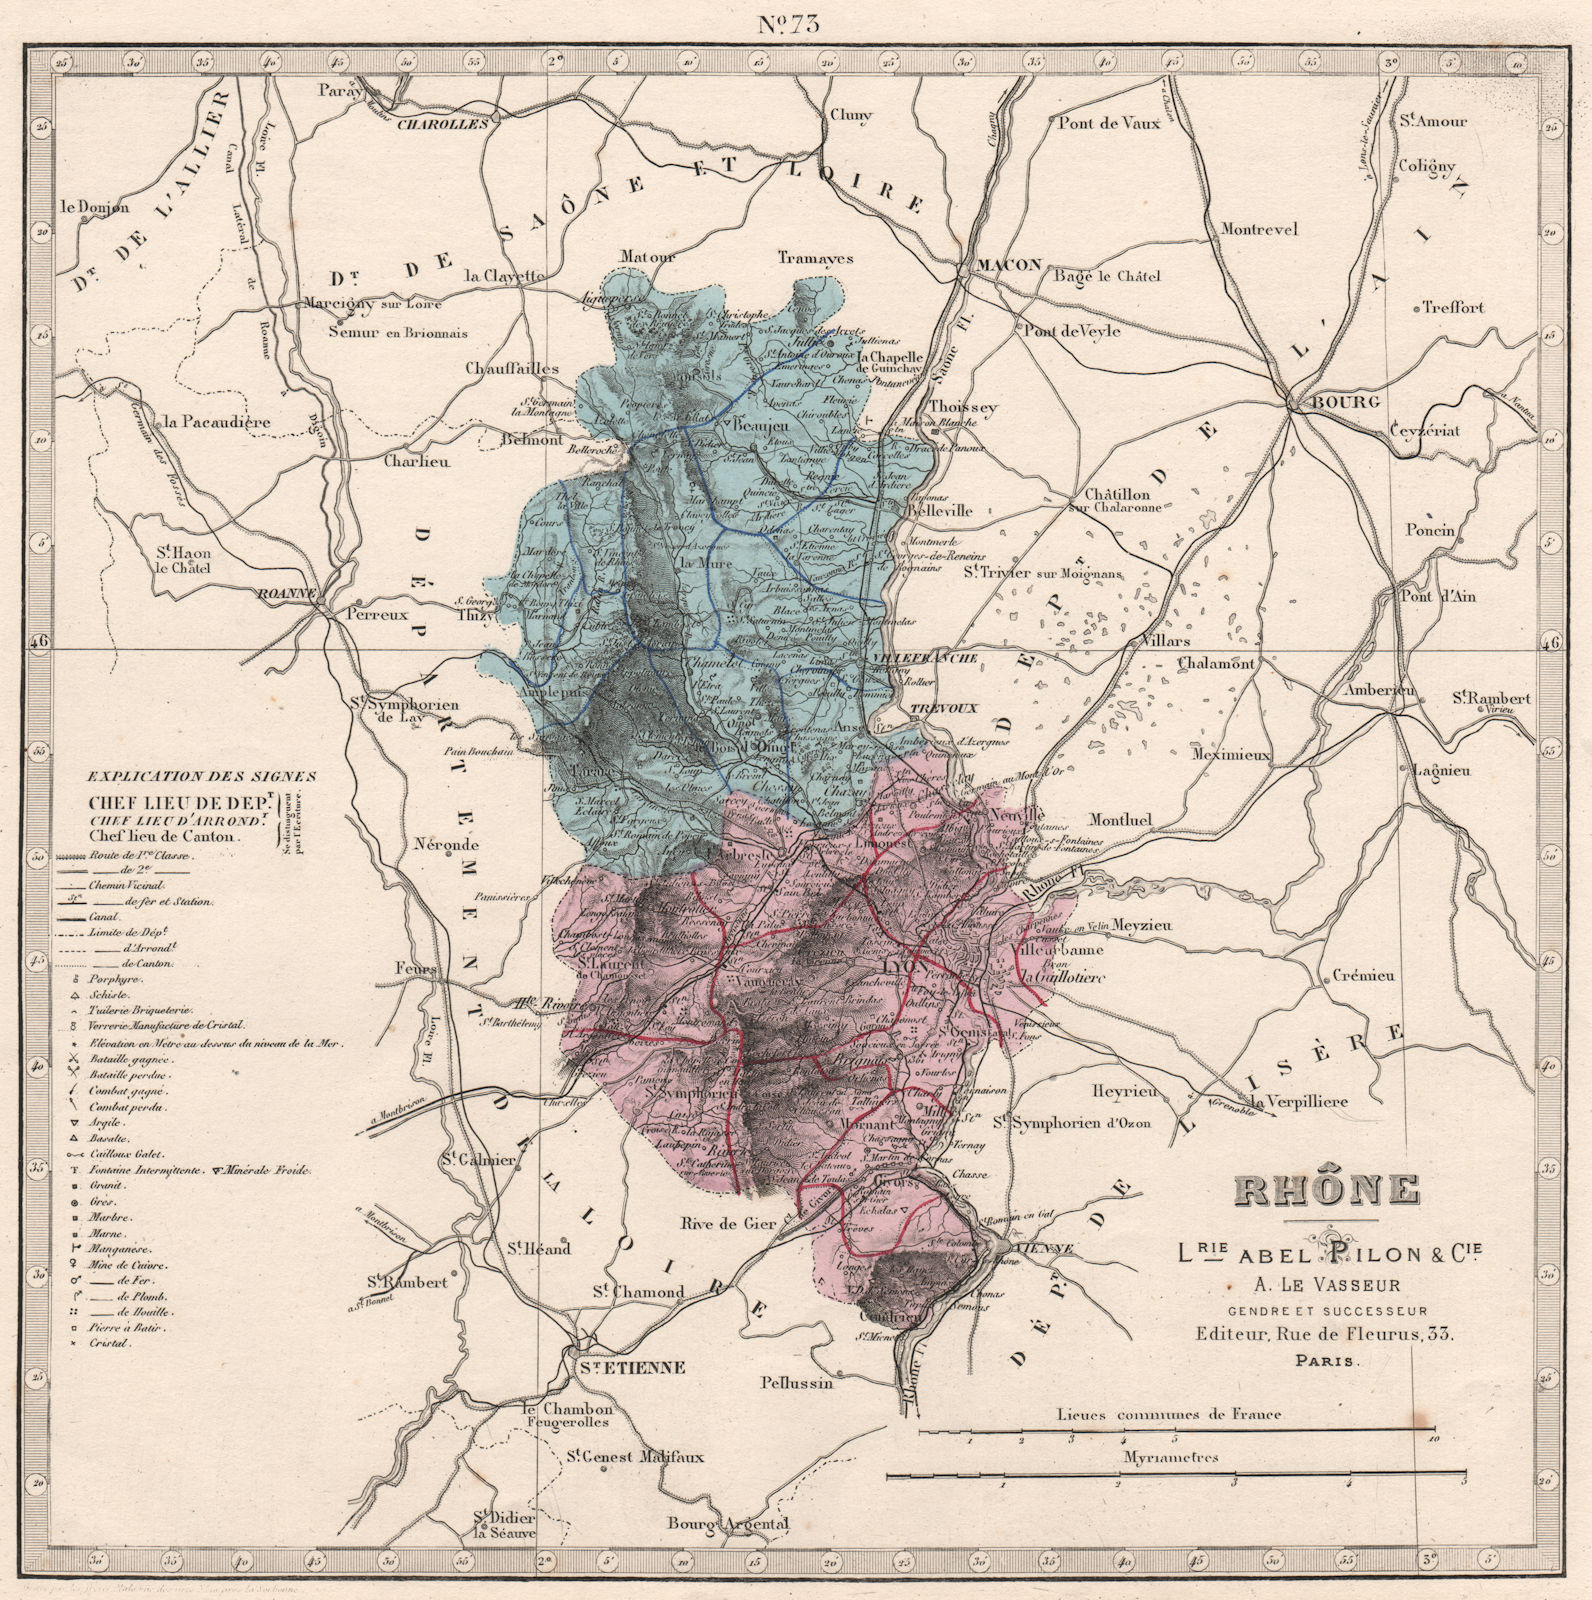 RHÔNE department. Battlefields/dates, resources & minerals. LE VASSEUR 1876 map